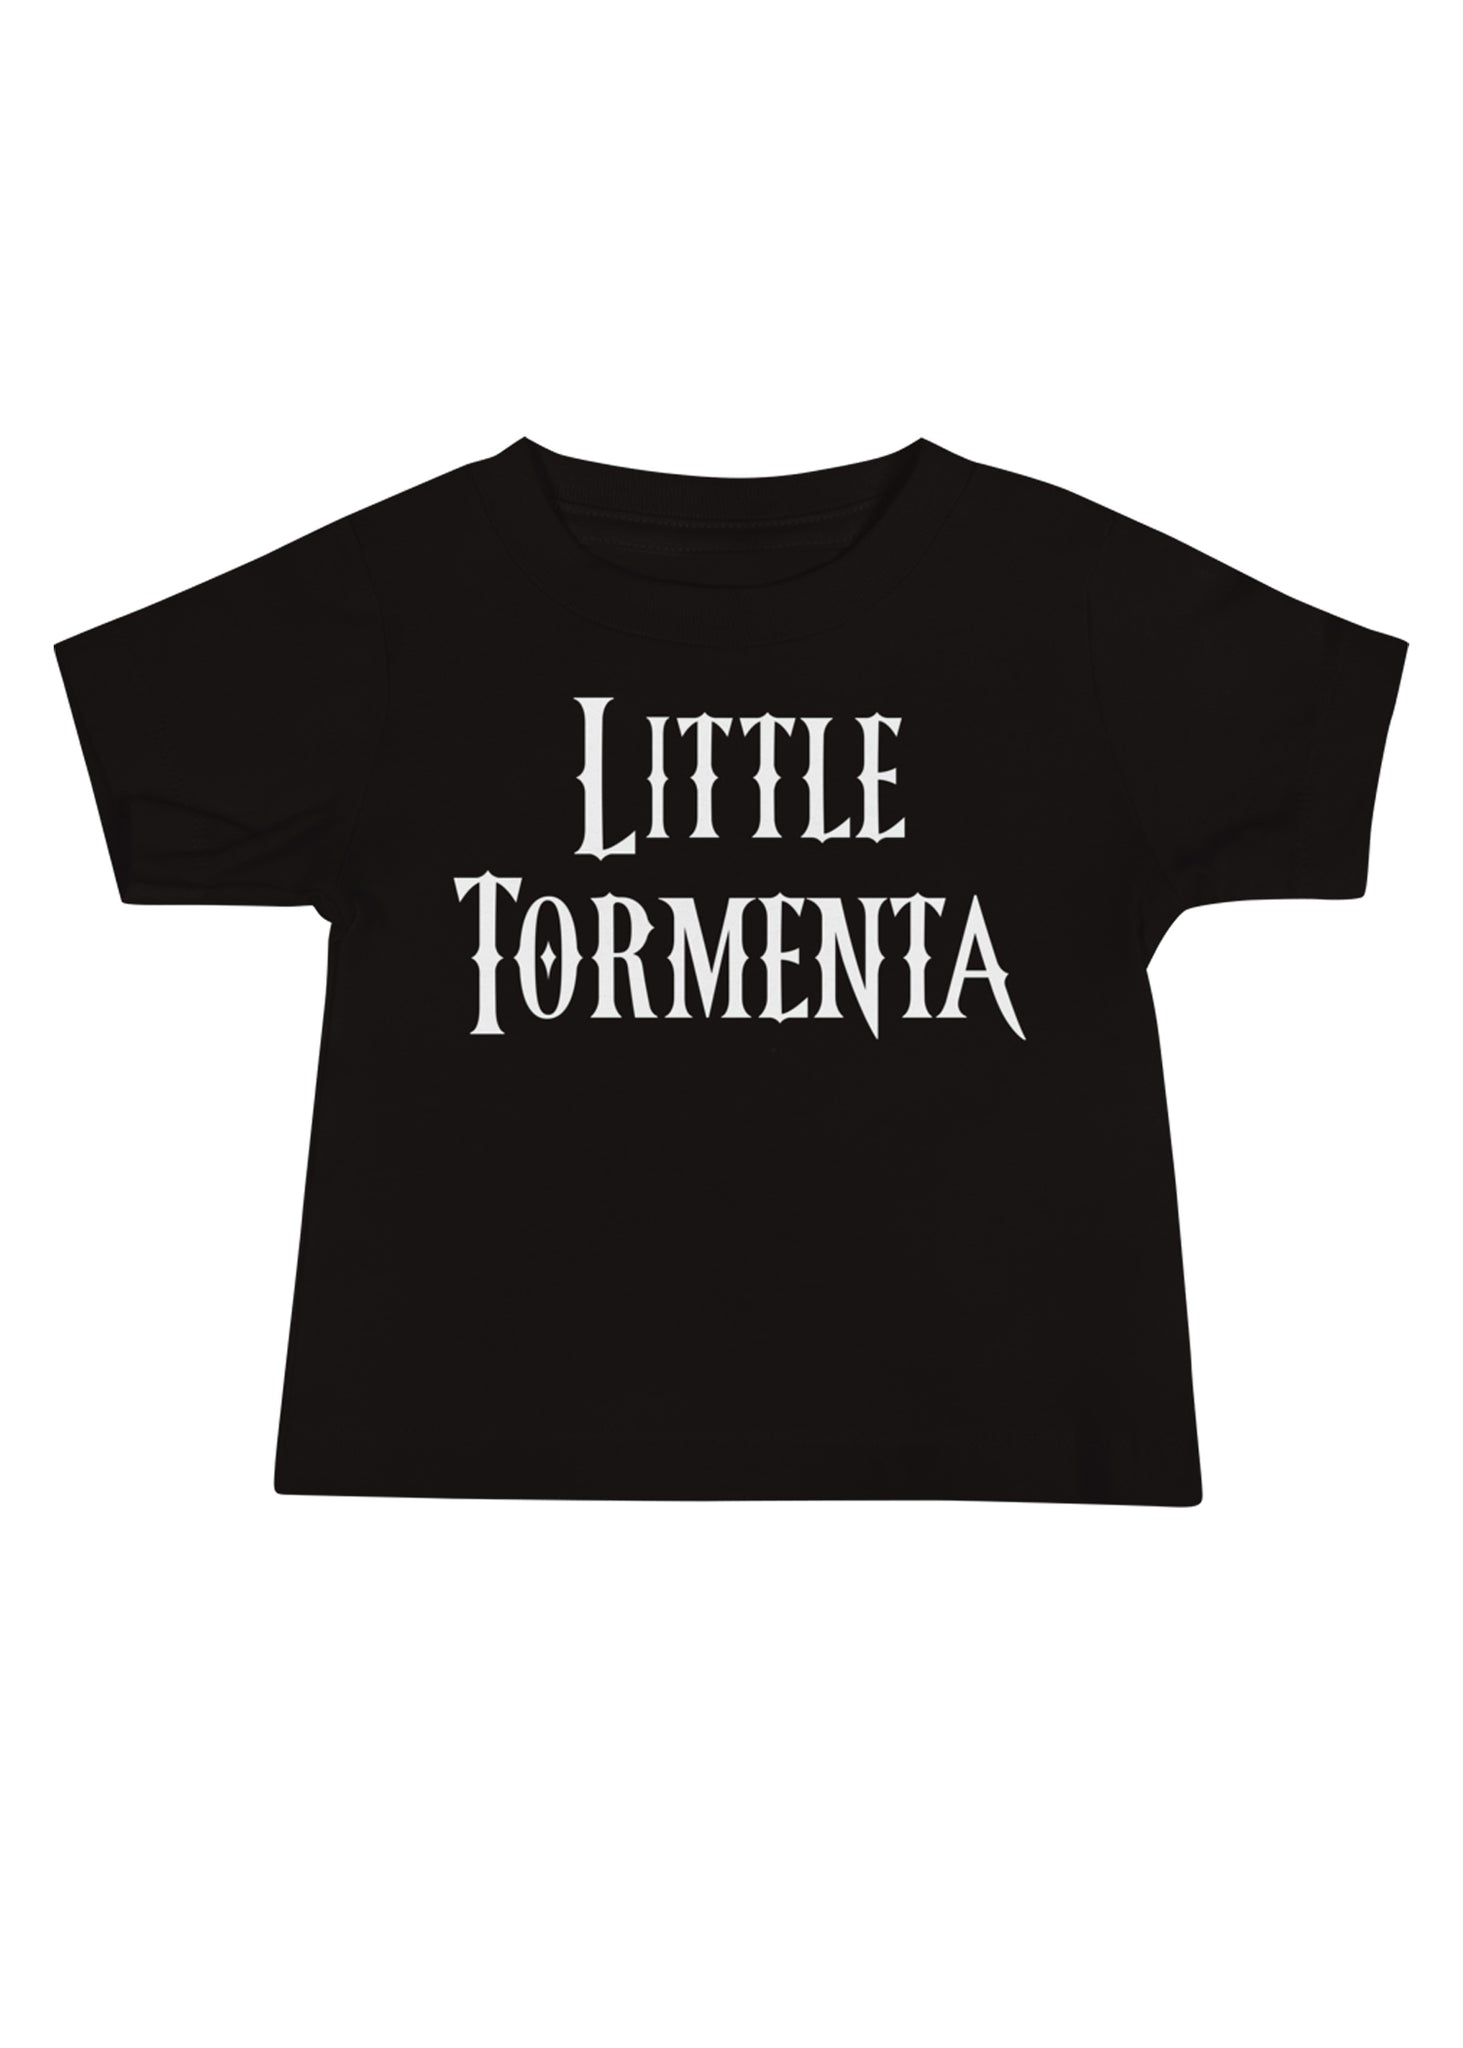 Baby Little Tormenta T-Shirt